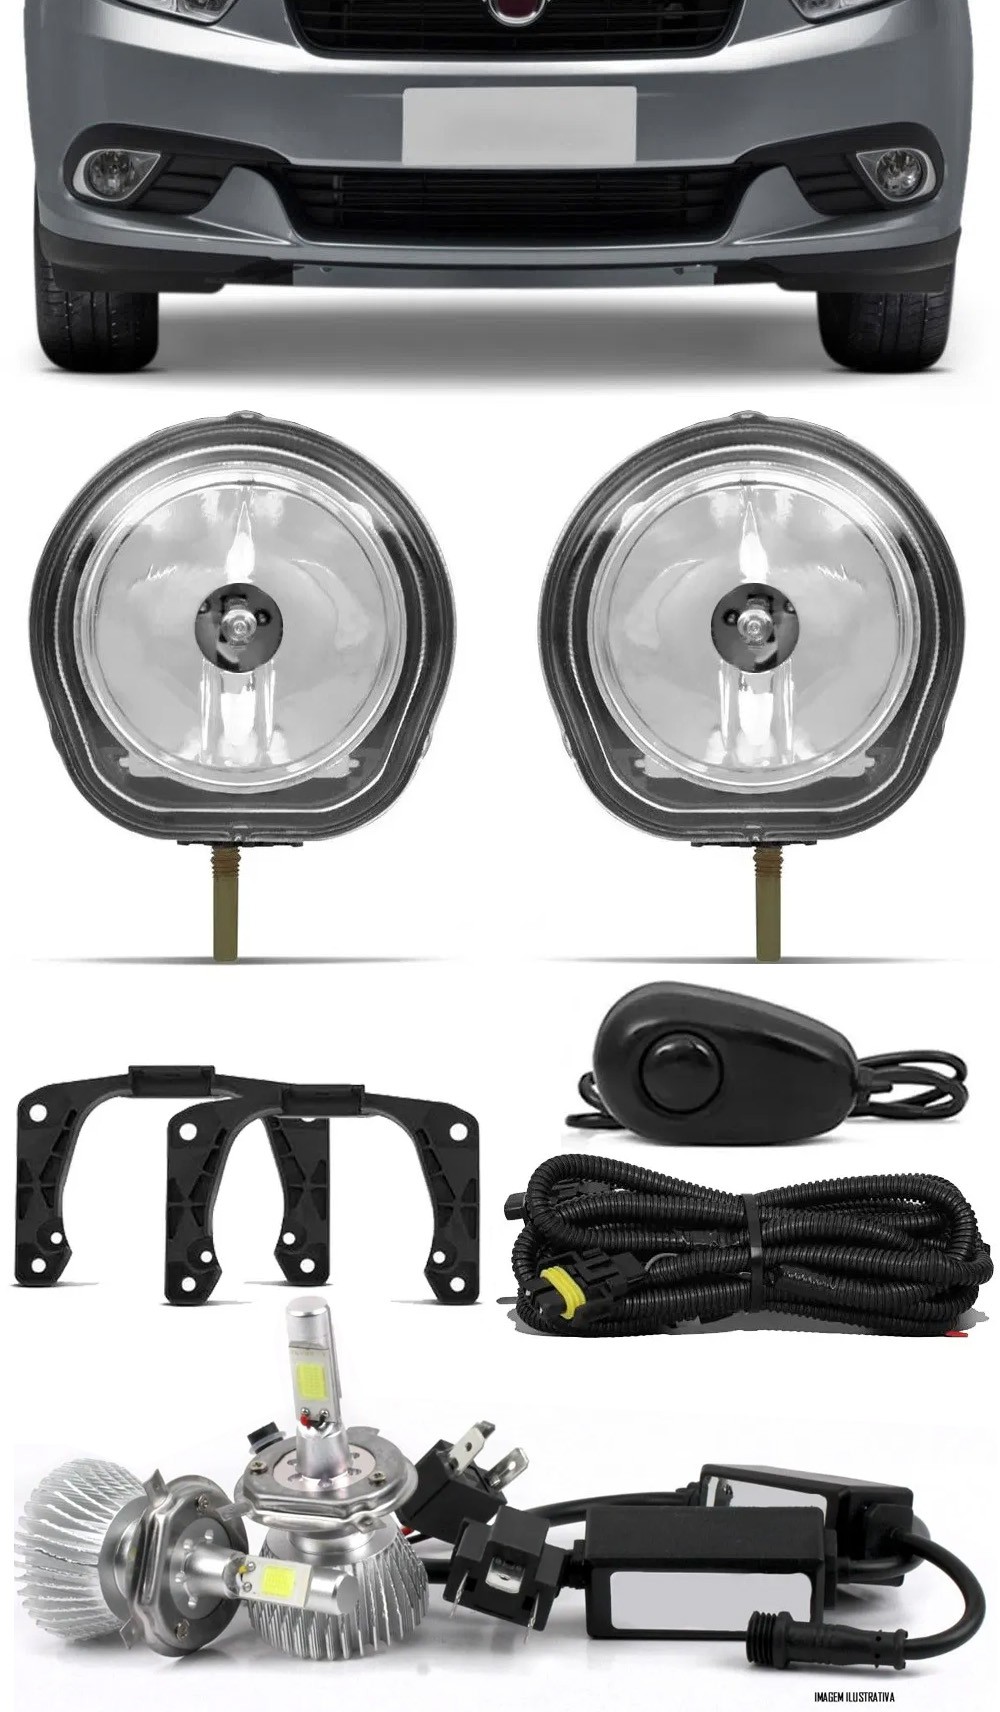 Kit Farol de Milha Neblina Fiat Grand Siena 2012 até 2021 + Kit Lâmpada Super LED 6000K